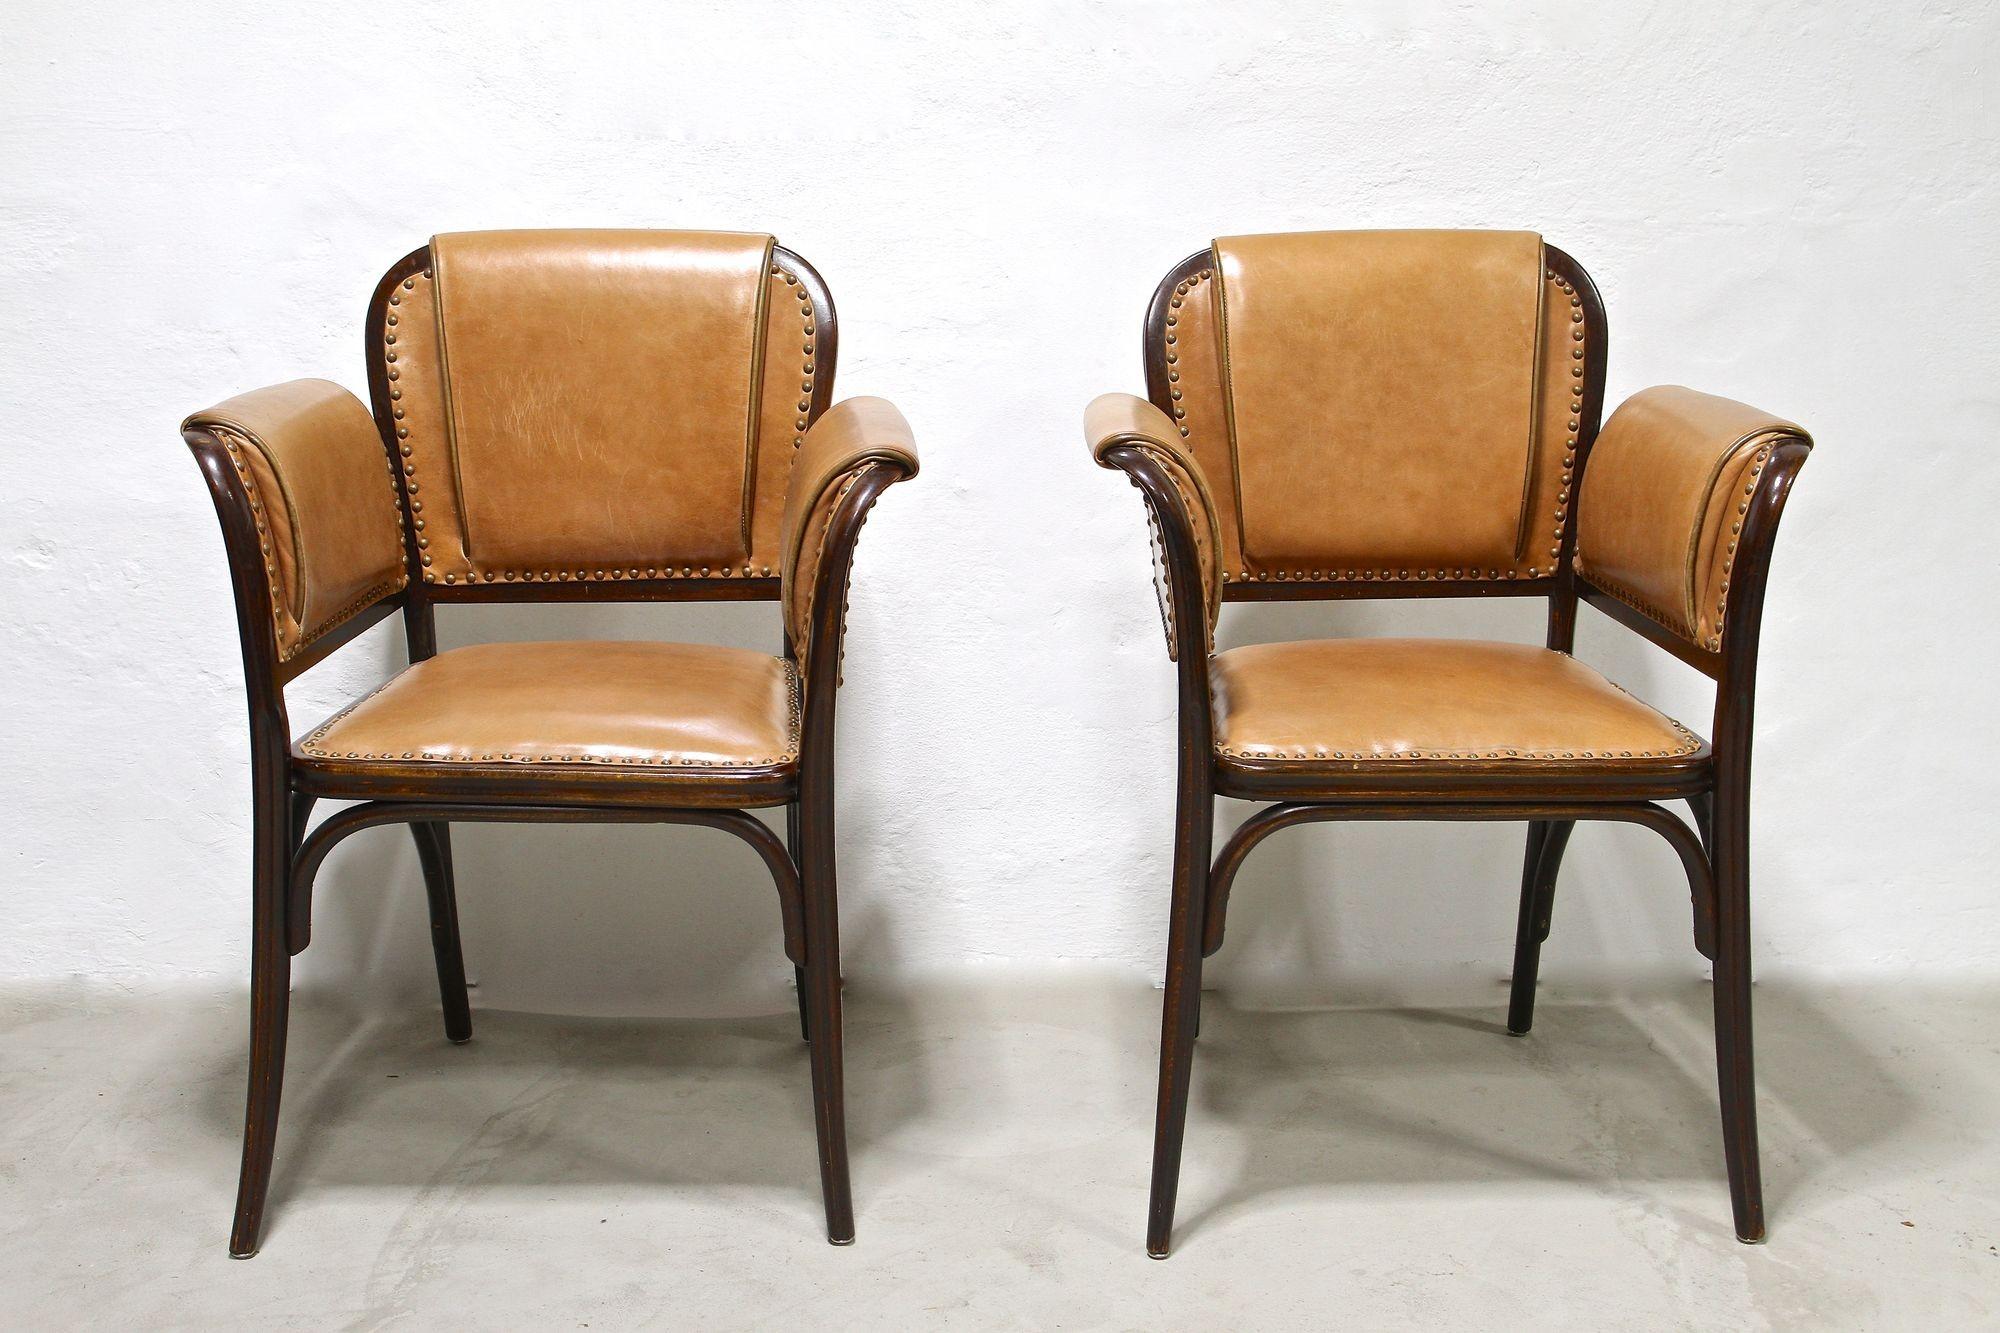 Paire absolument rare de fauteuils en bois courbé Art Nouveau de la période autour de 1904. Impressionnants par leurs formes étonnantes, ces fauteuils du début du 20e siècle ont été fabriqués par la société mondialement connue THONET Vienna - le